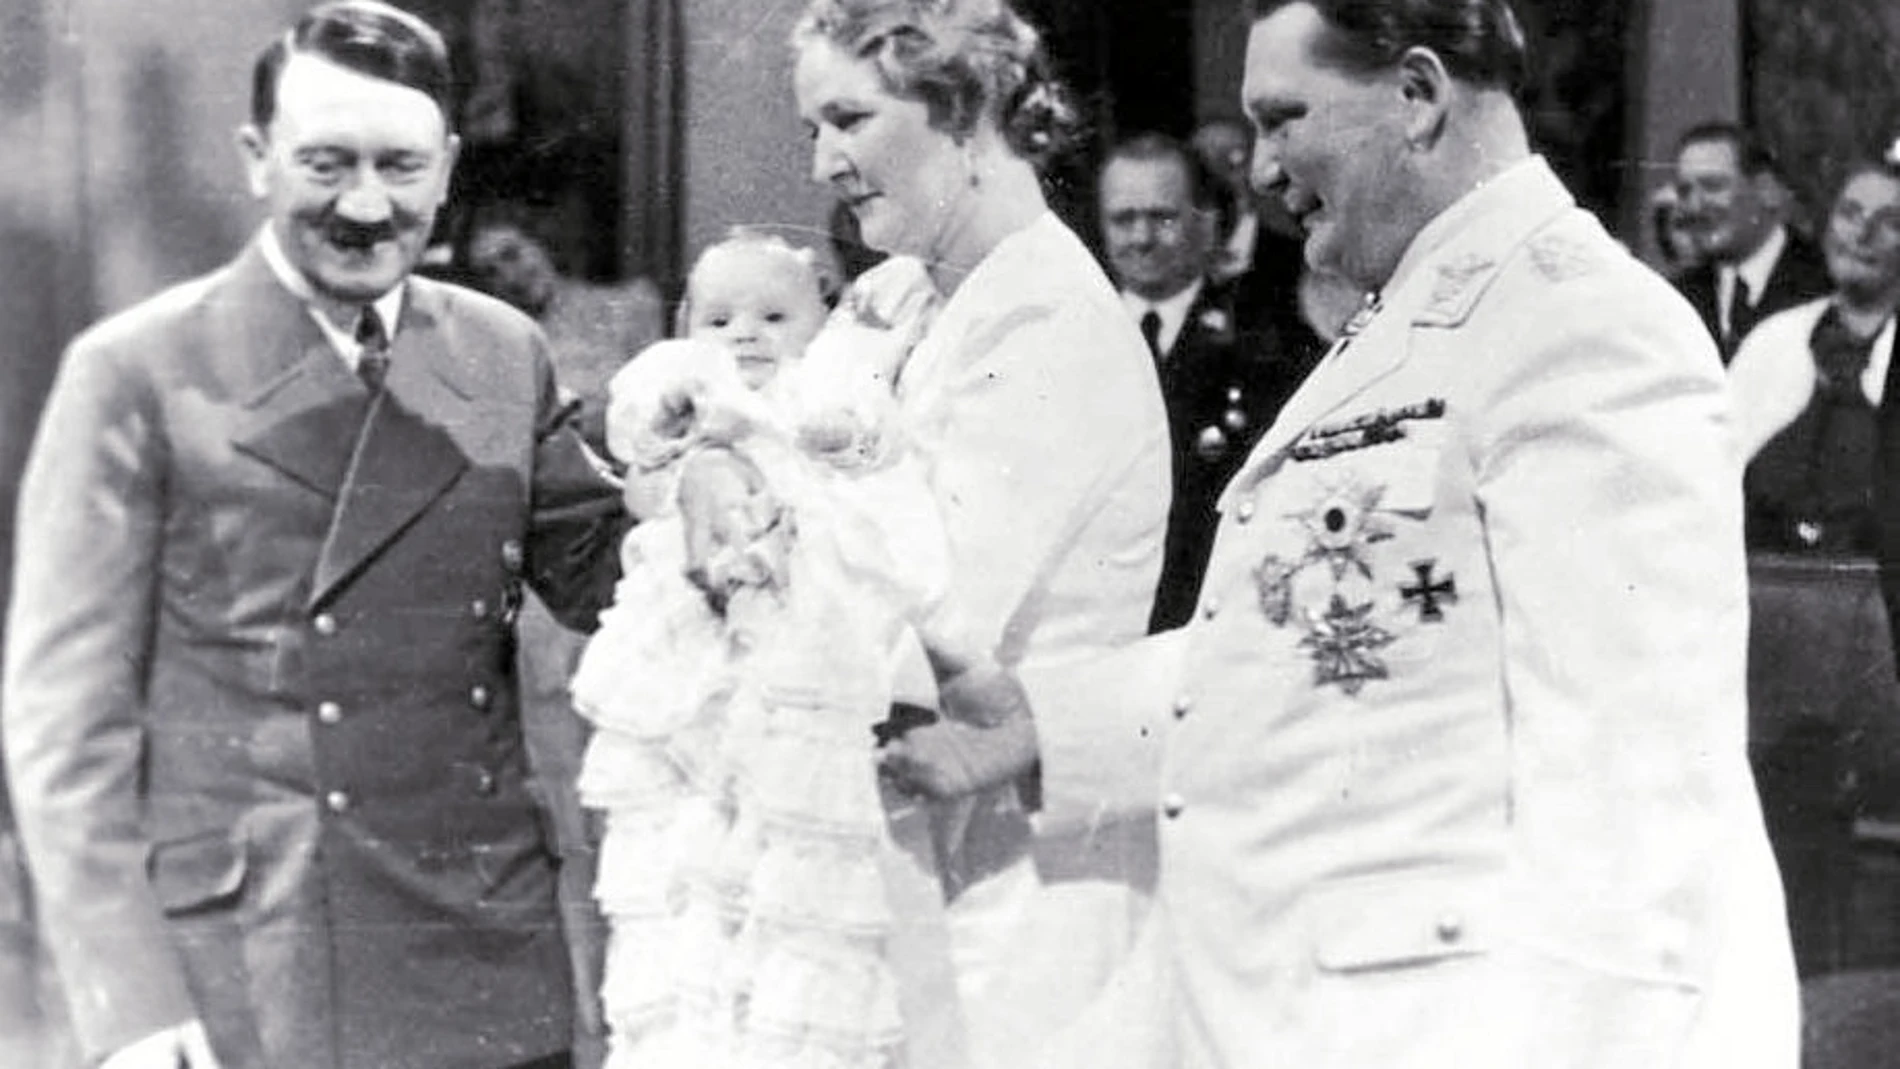 El matrimonio Goering y la pequeña Edda junto al Führer el día del bautizo de la niña